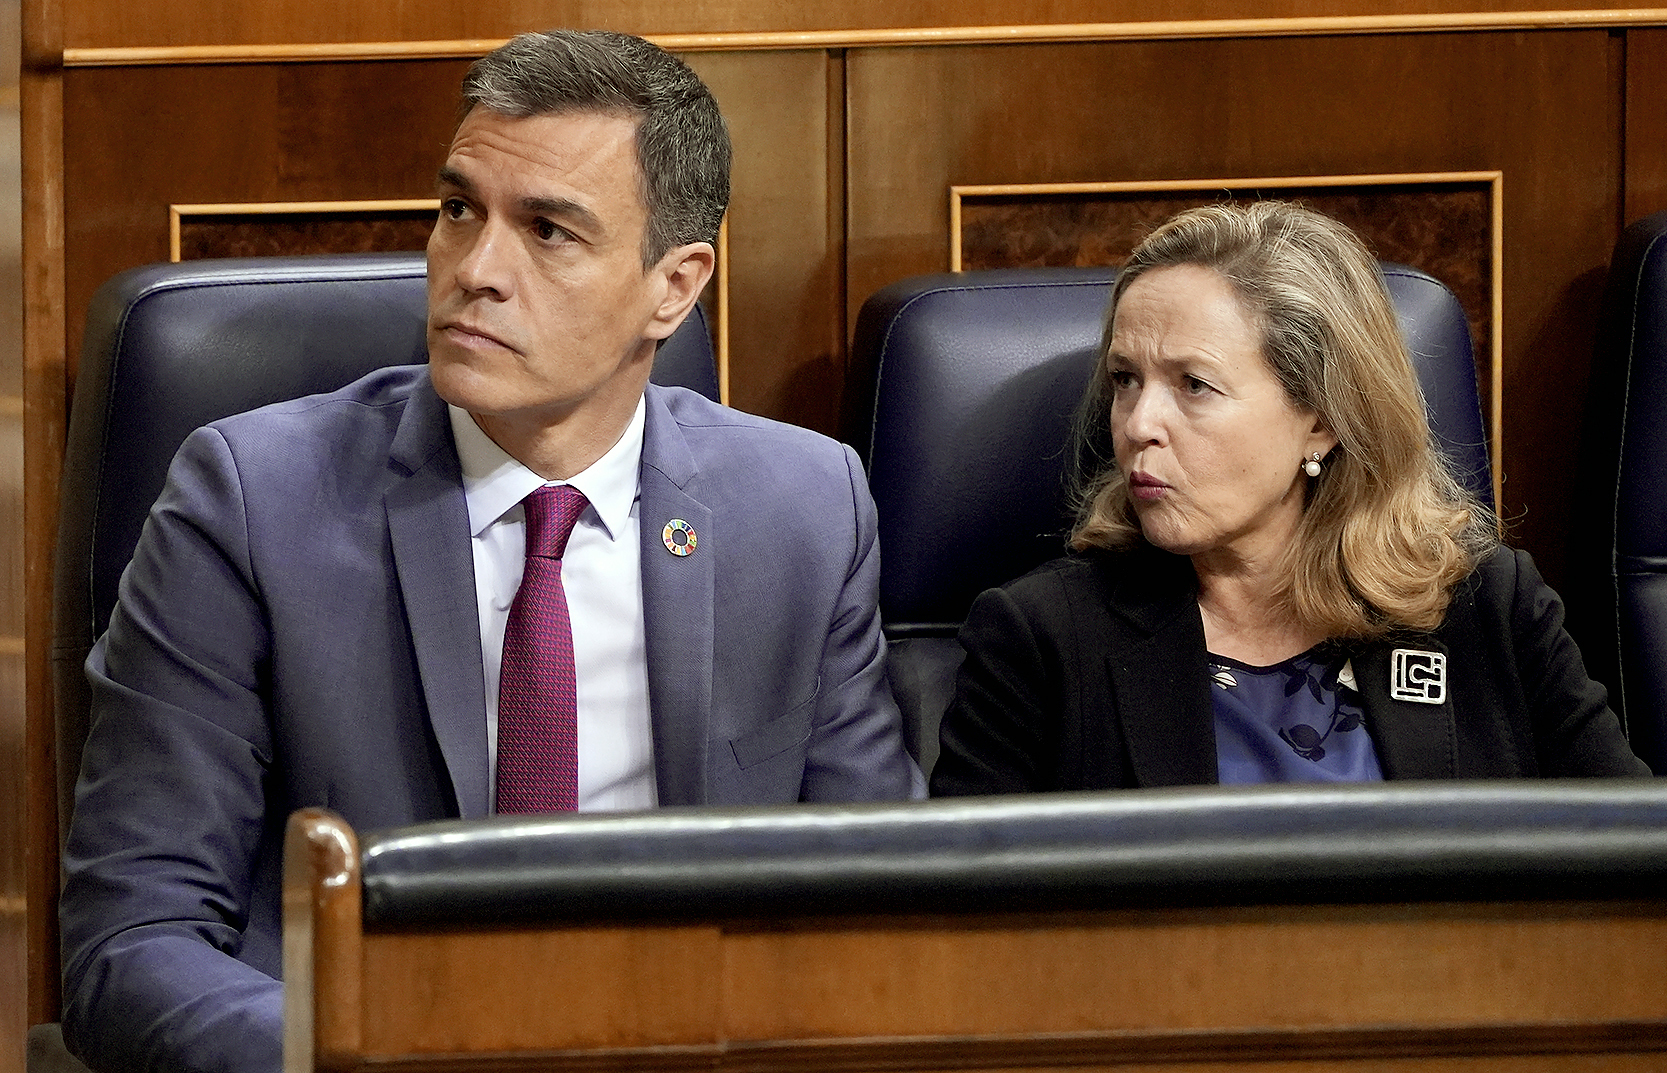 El presidente del Gobierno, Pedro Sánchez, junto a la ministra de Economía, Nadia Calviño en una sesión reciente del Congreso de los Diputados.